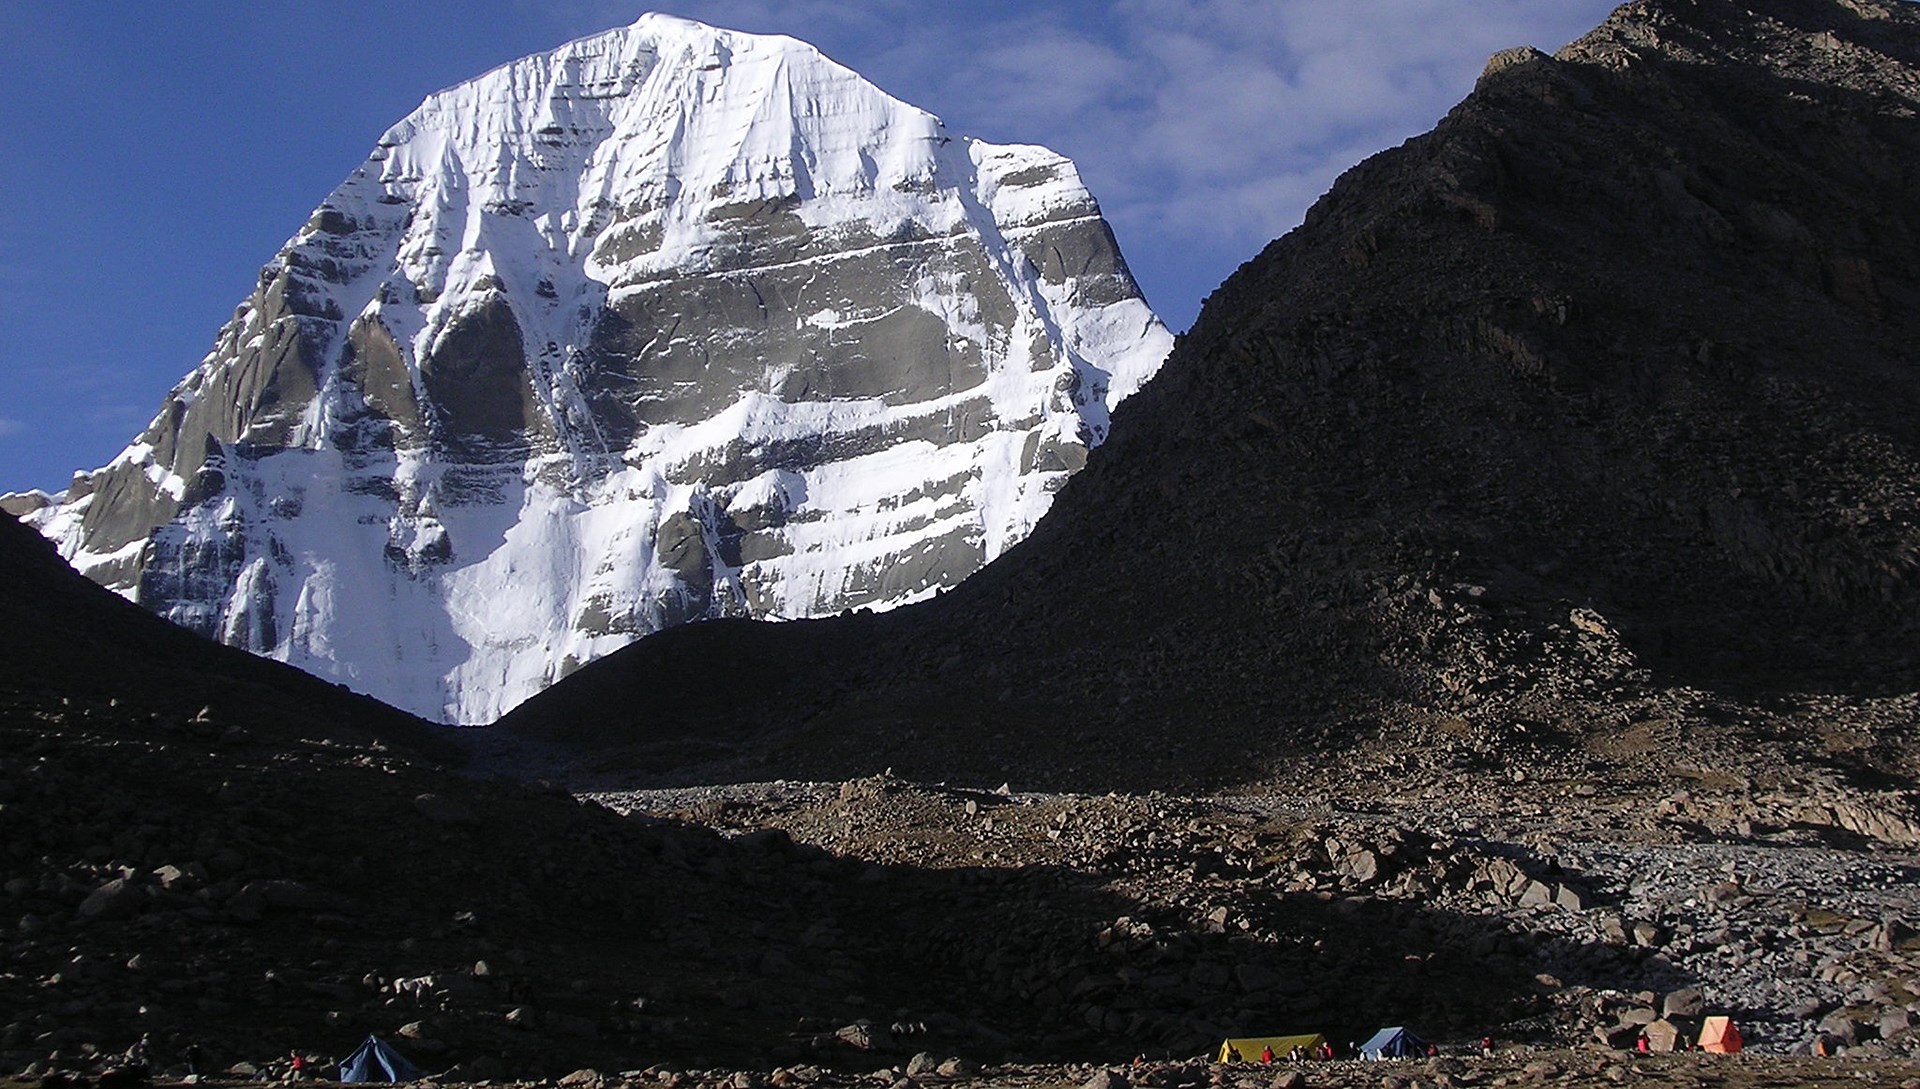 Überlandreise von Lhasa nach Kathmandu mit Everest und Kailash Trekking